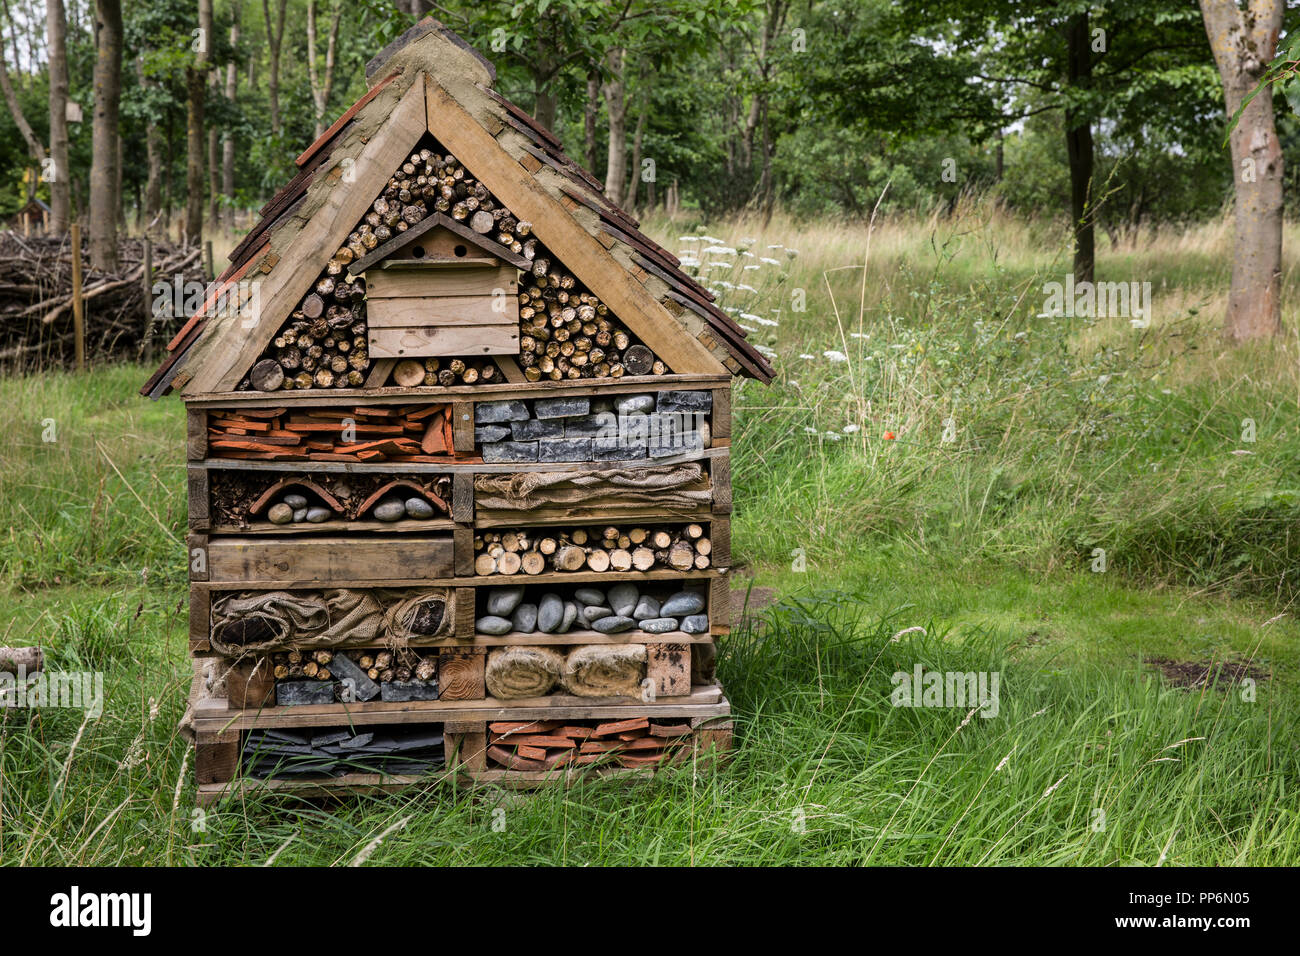 Gros bug maison de plusieurs couches de différents matériaux dans un jardin. Banque D'Images